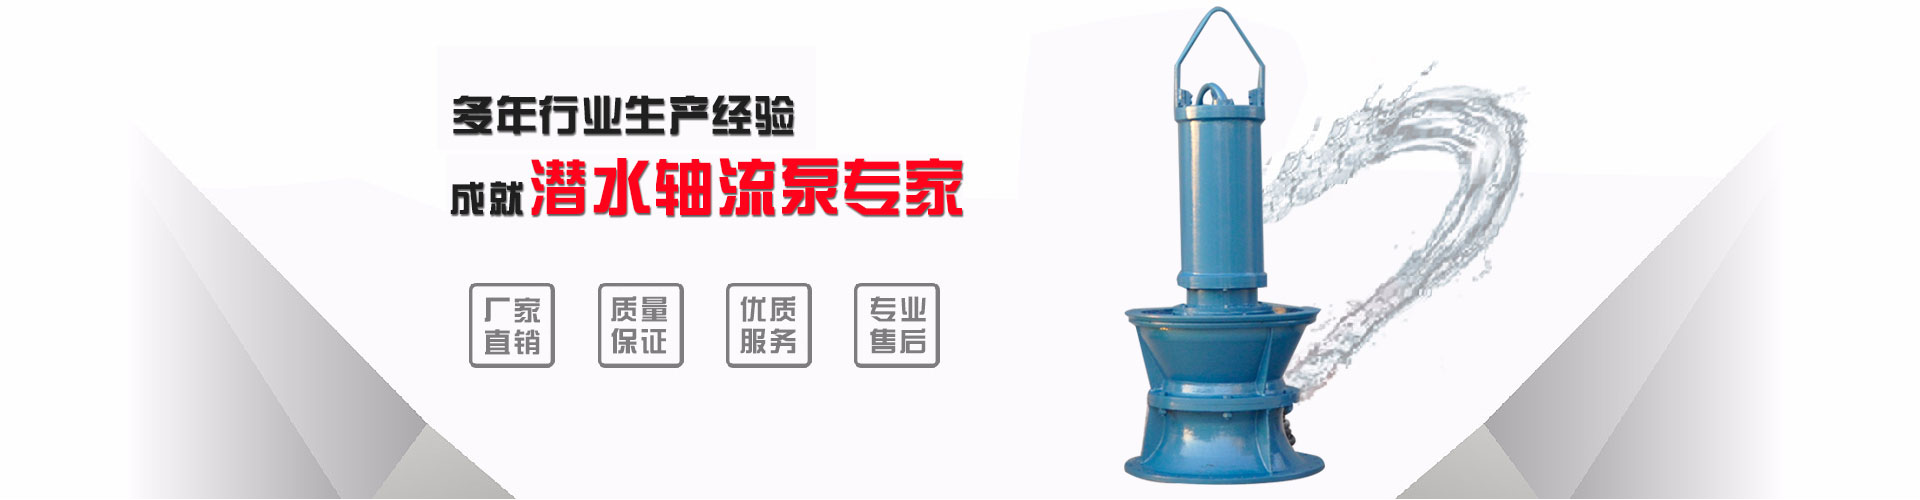 长沙浮筒泵工业_吉安浮筒泵